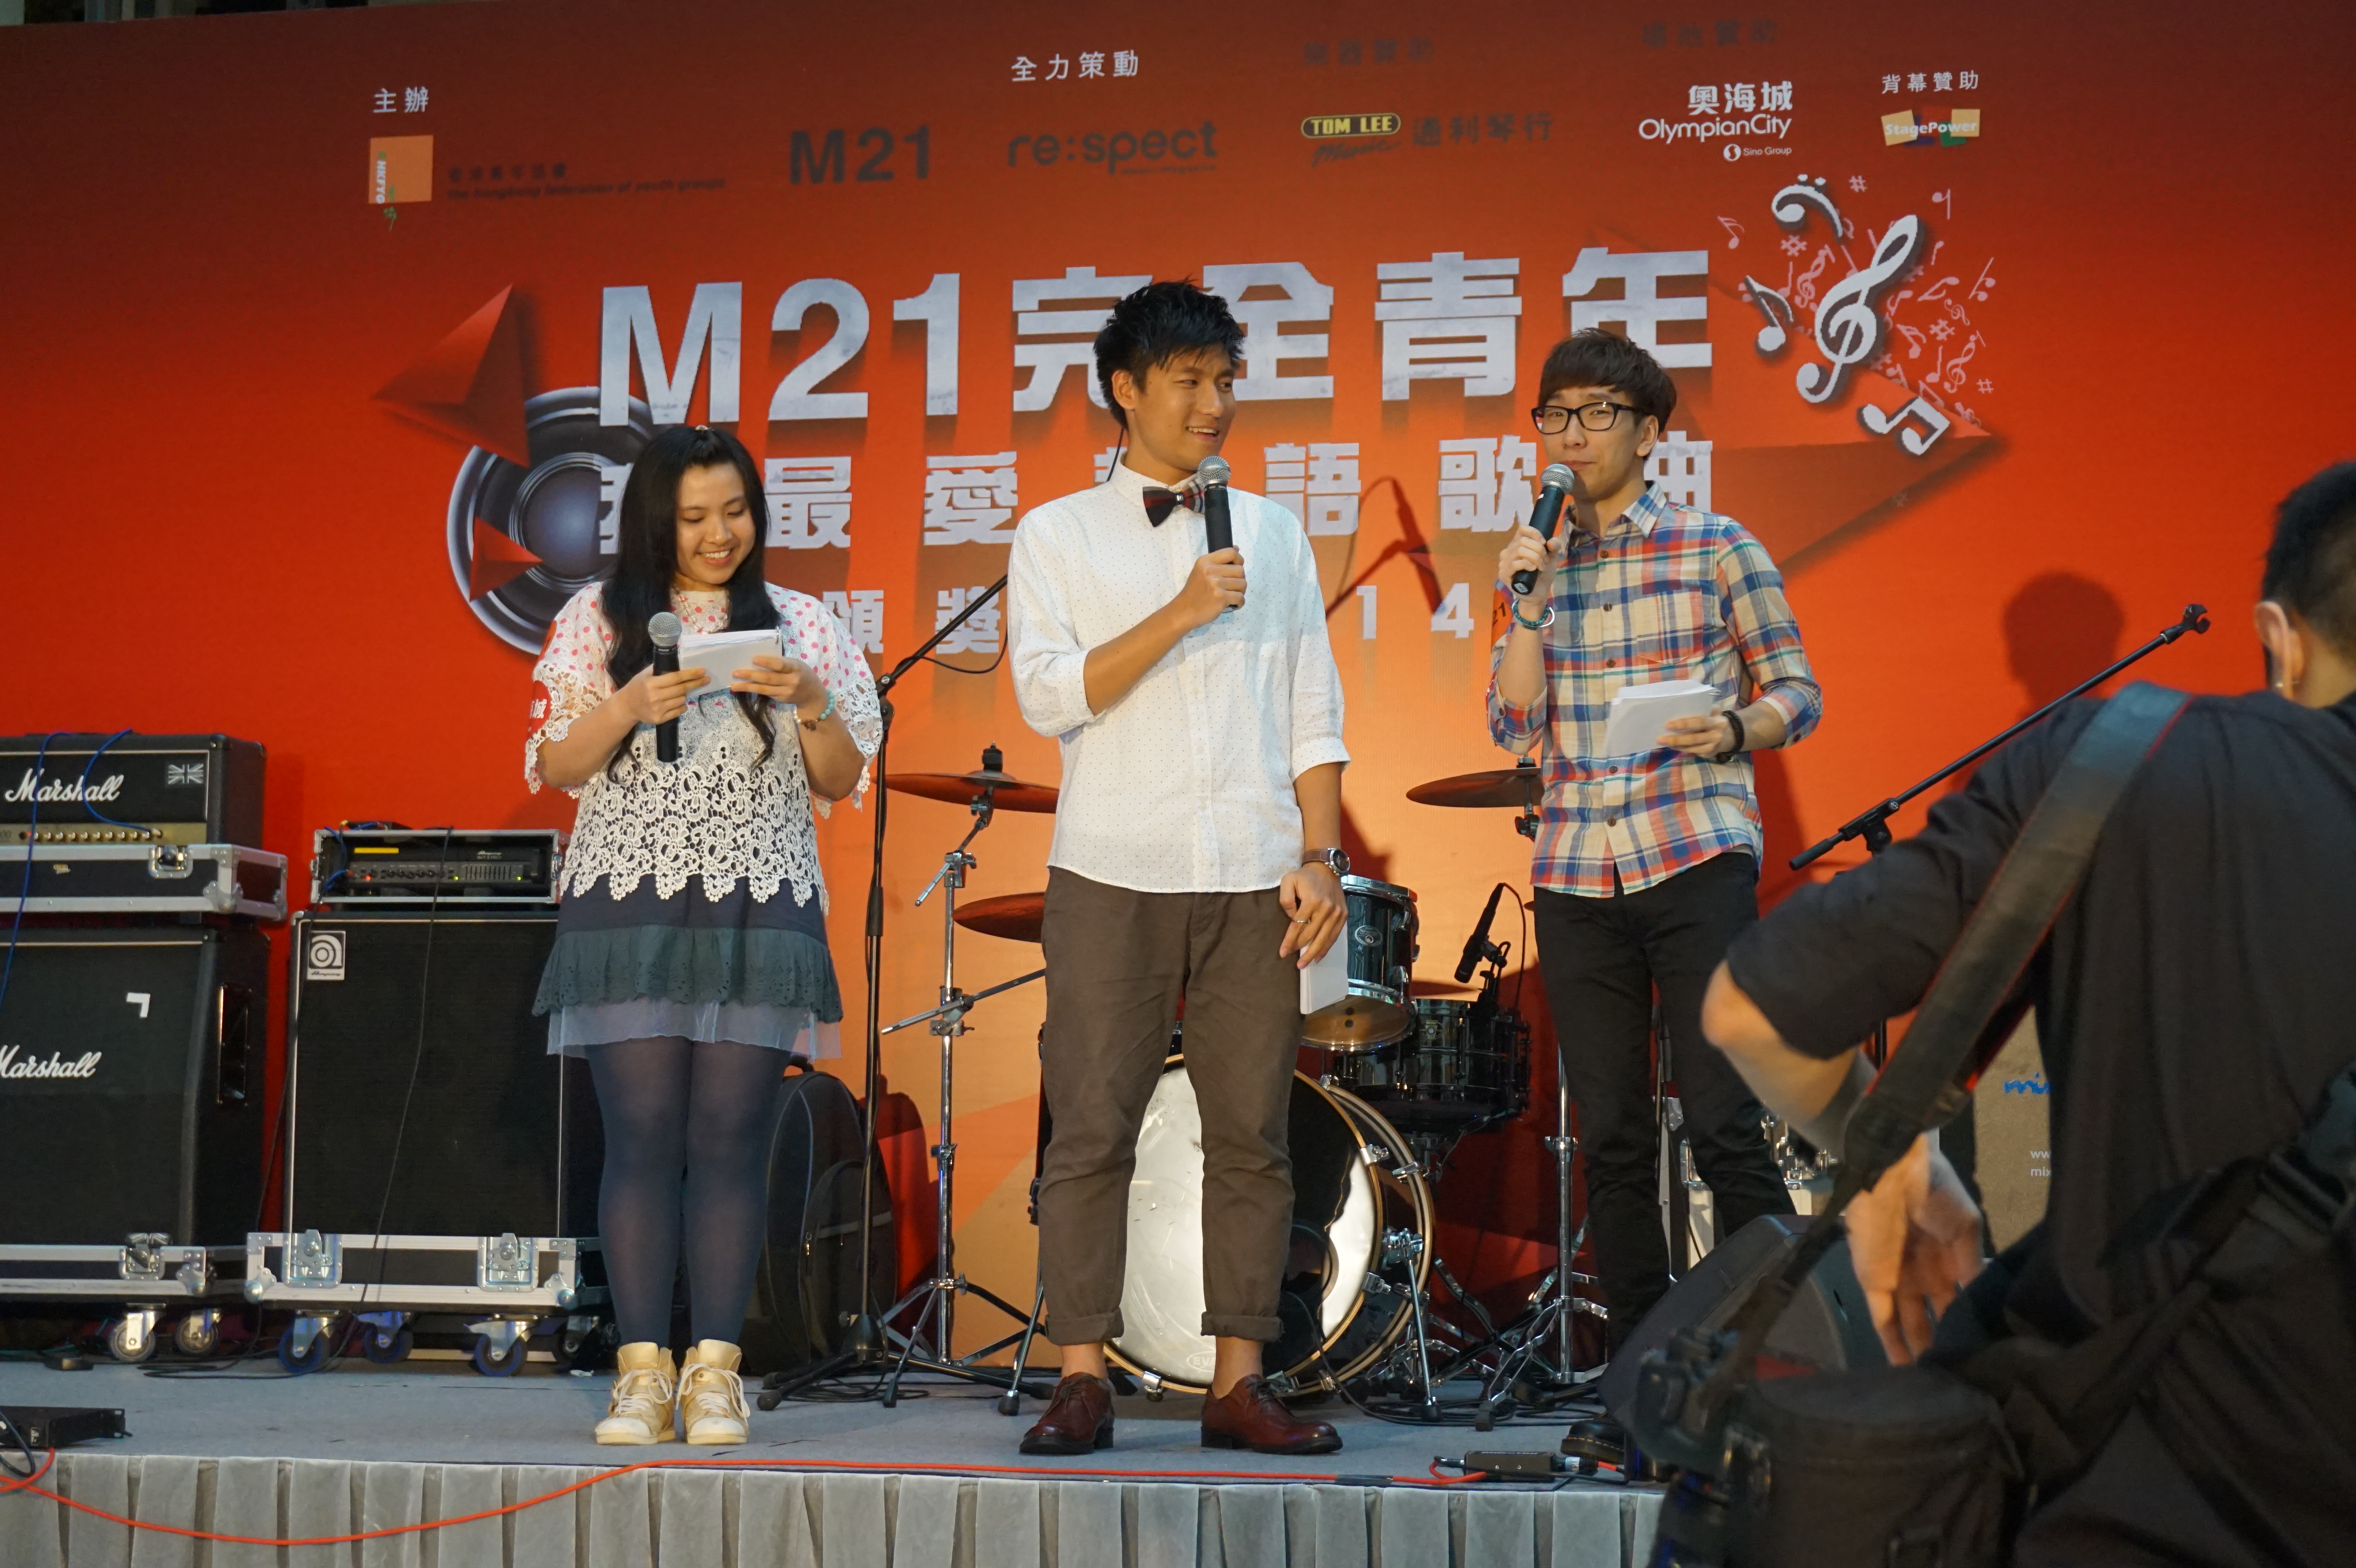 細眼之司儀主持紀錄: 「活動主持」M21完全青年・我最愛華語歌曲頒獎禮2014